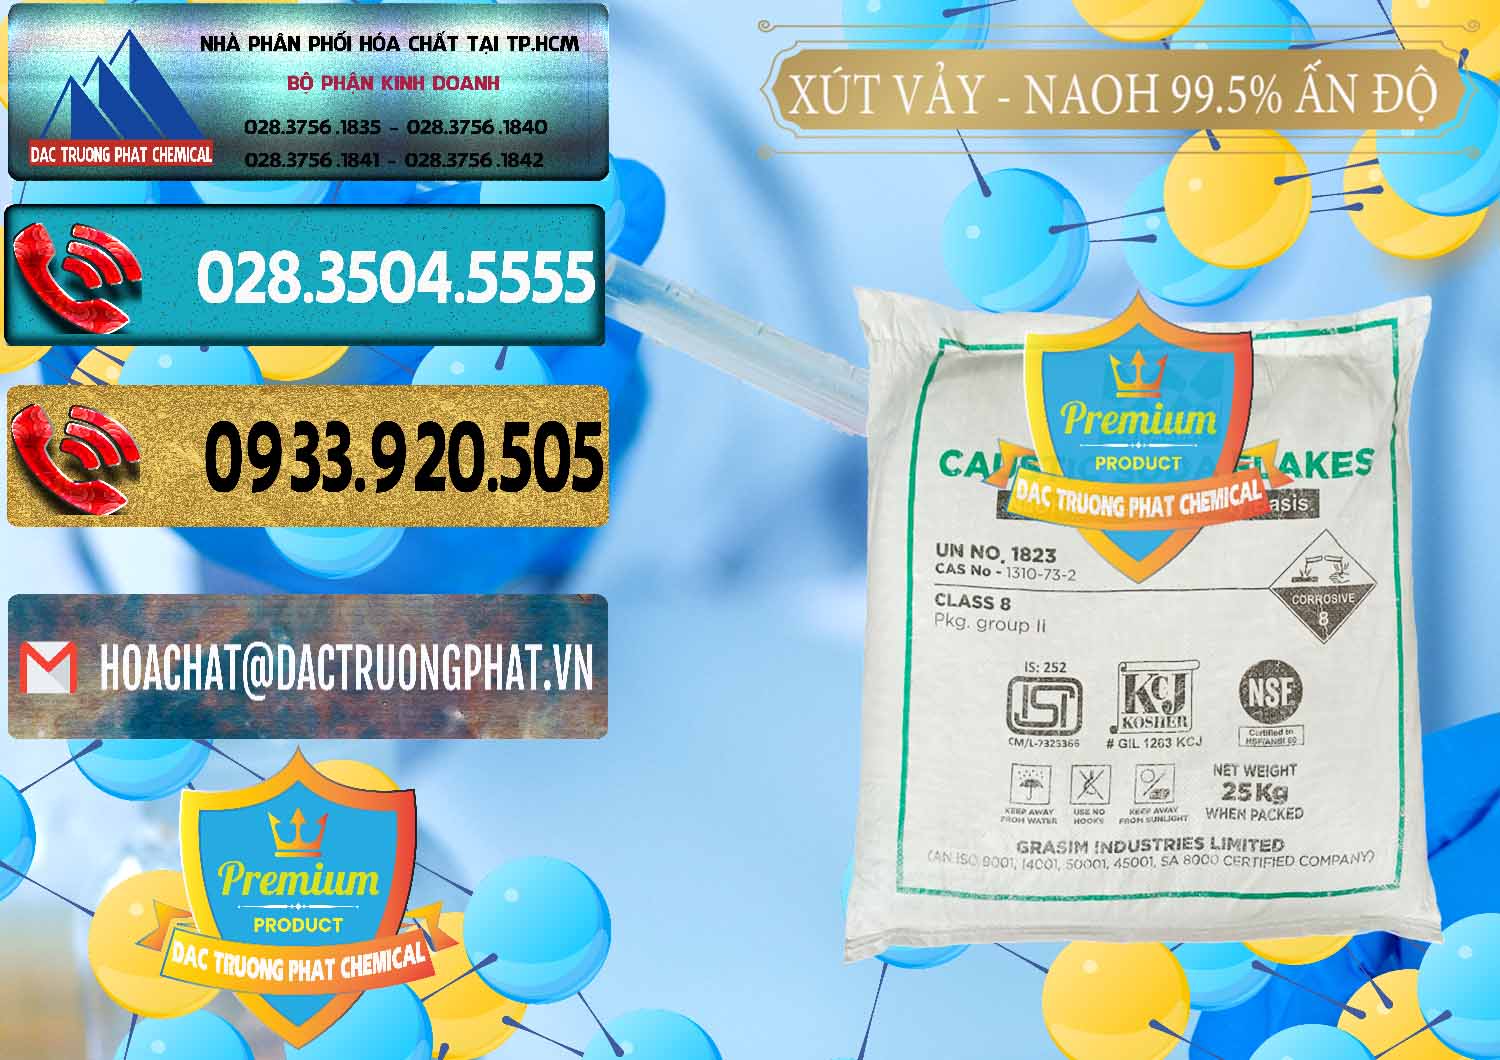 Đơn vị chuyên nhập khẩu và bán Xút Vảy - NaOH Vảy 99.5% Aditya Birla Grasim Ấn Độ India - 0170 - Nơi nhập khẩu - phân phối hóa chất tại TP.HCM - hoachatdetnhuom.com